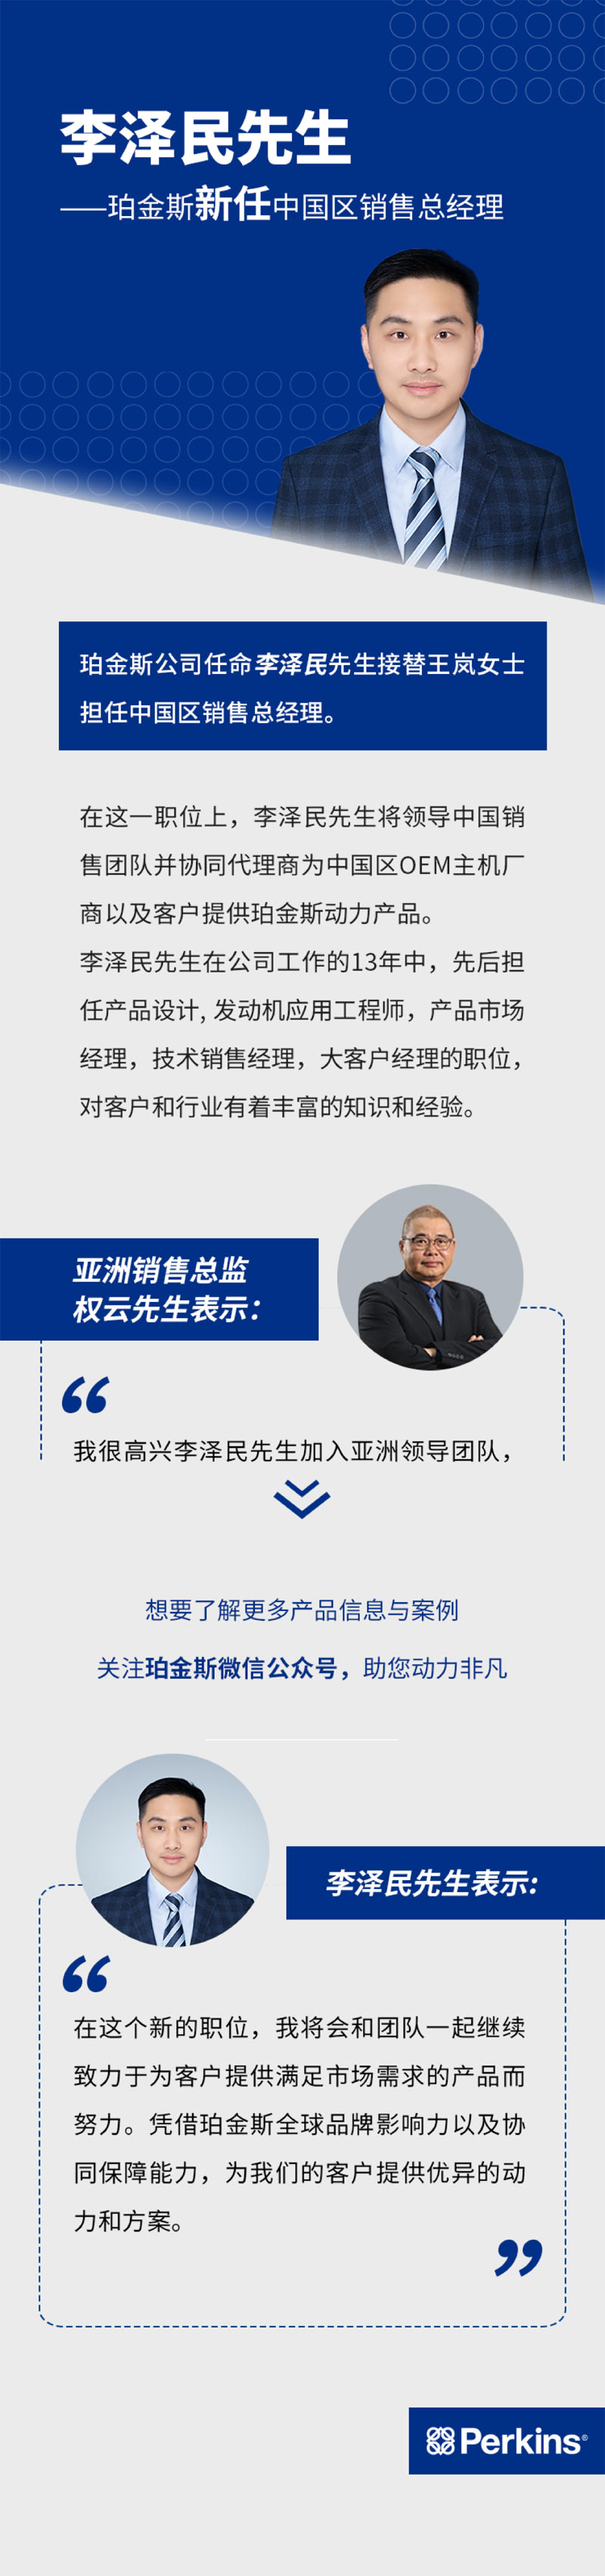 李泽民先生新任珀金斯中国区销售总经理